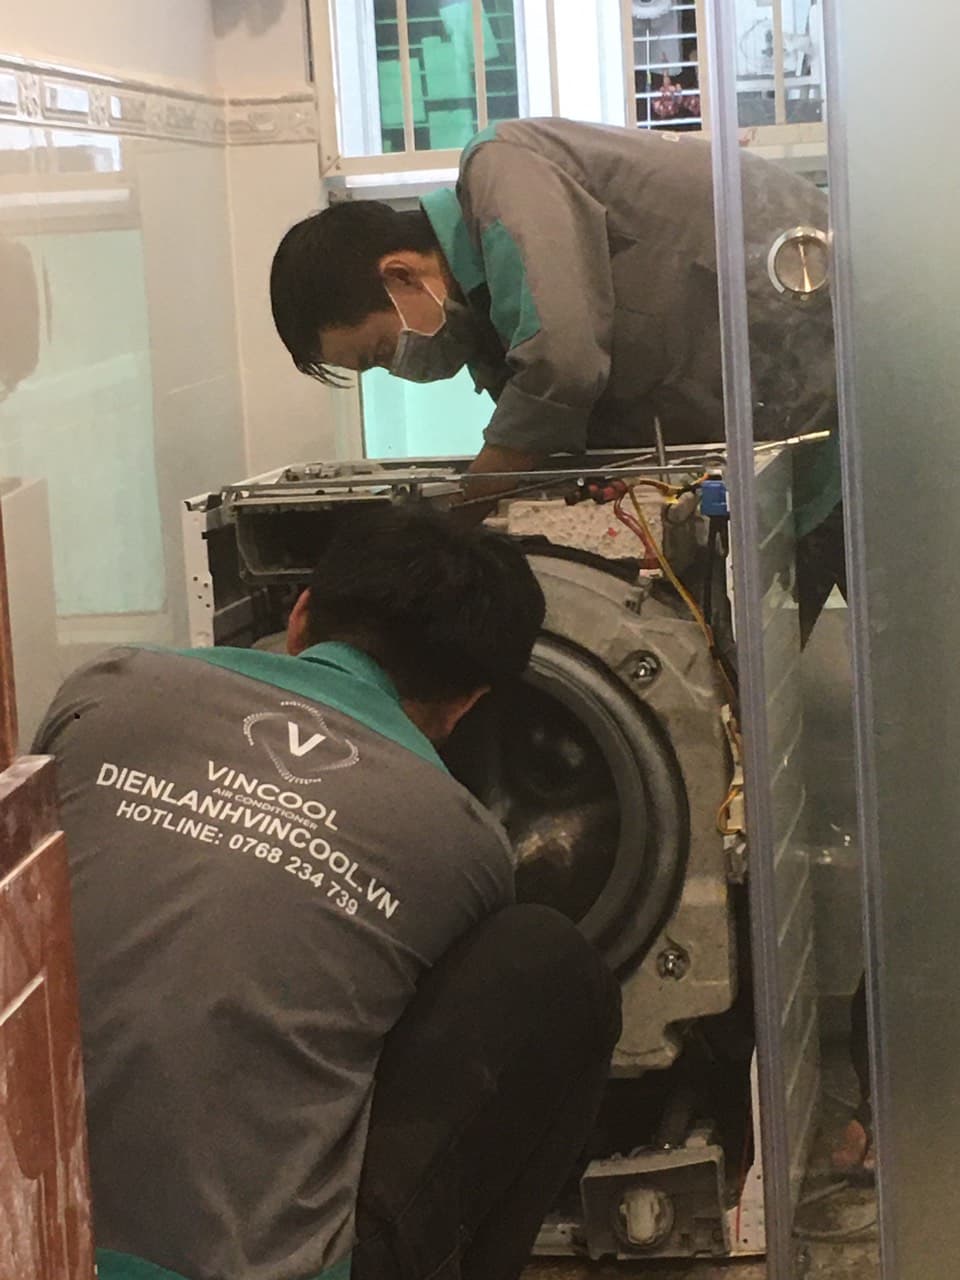 Liên hệ Điện lạnh Vincool ngay nếu bạn cần vệ sinh máy giặt quận Phú Nhuận